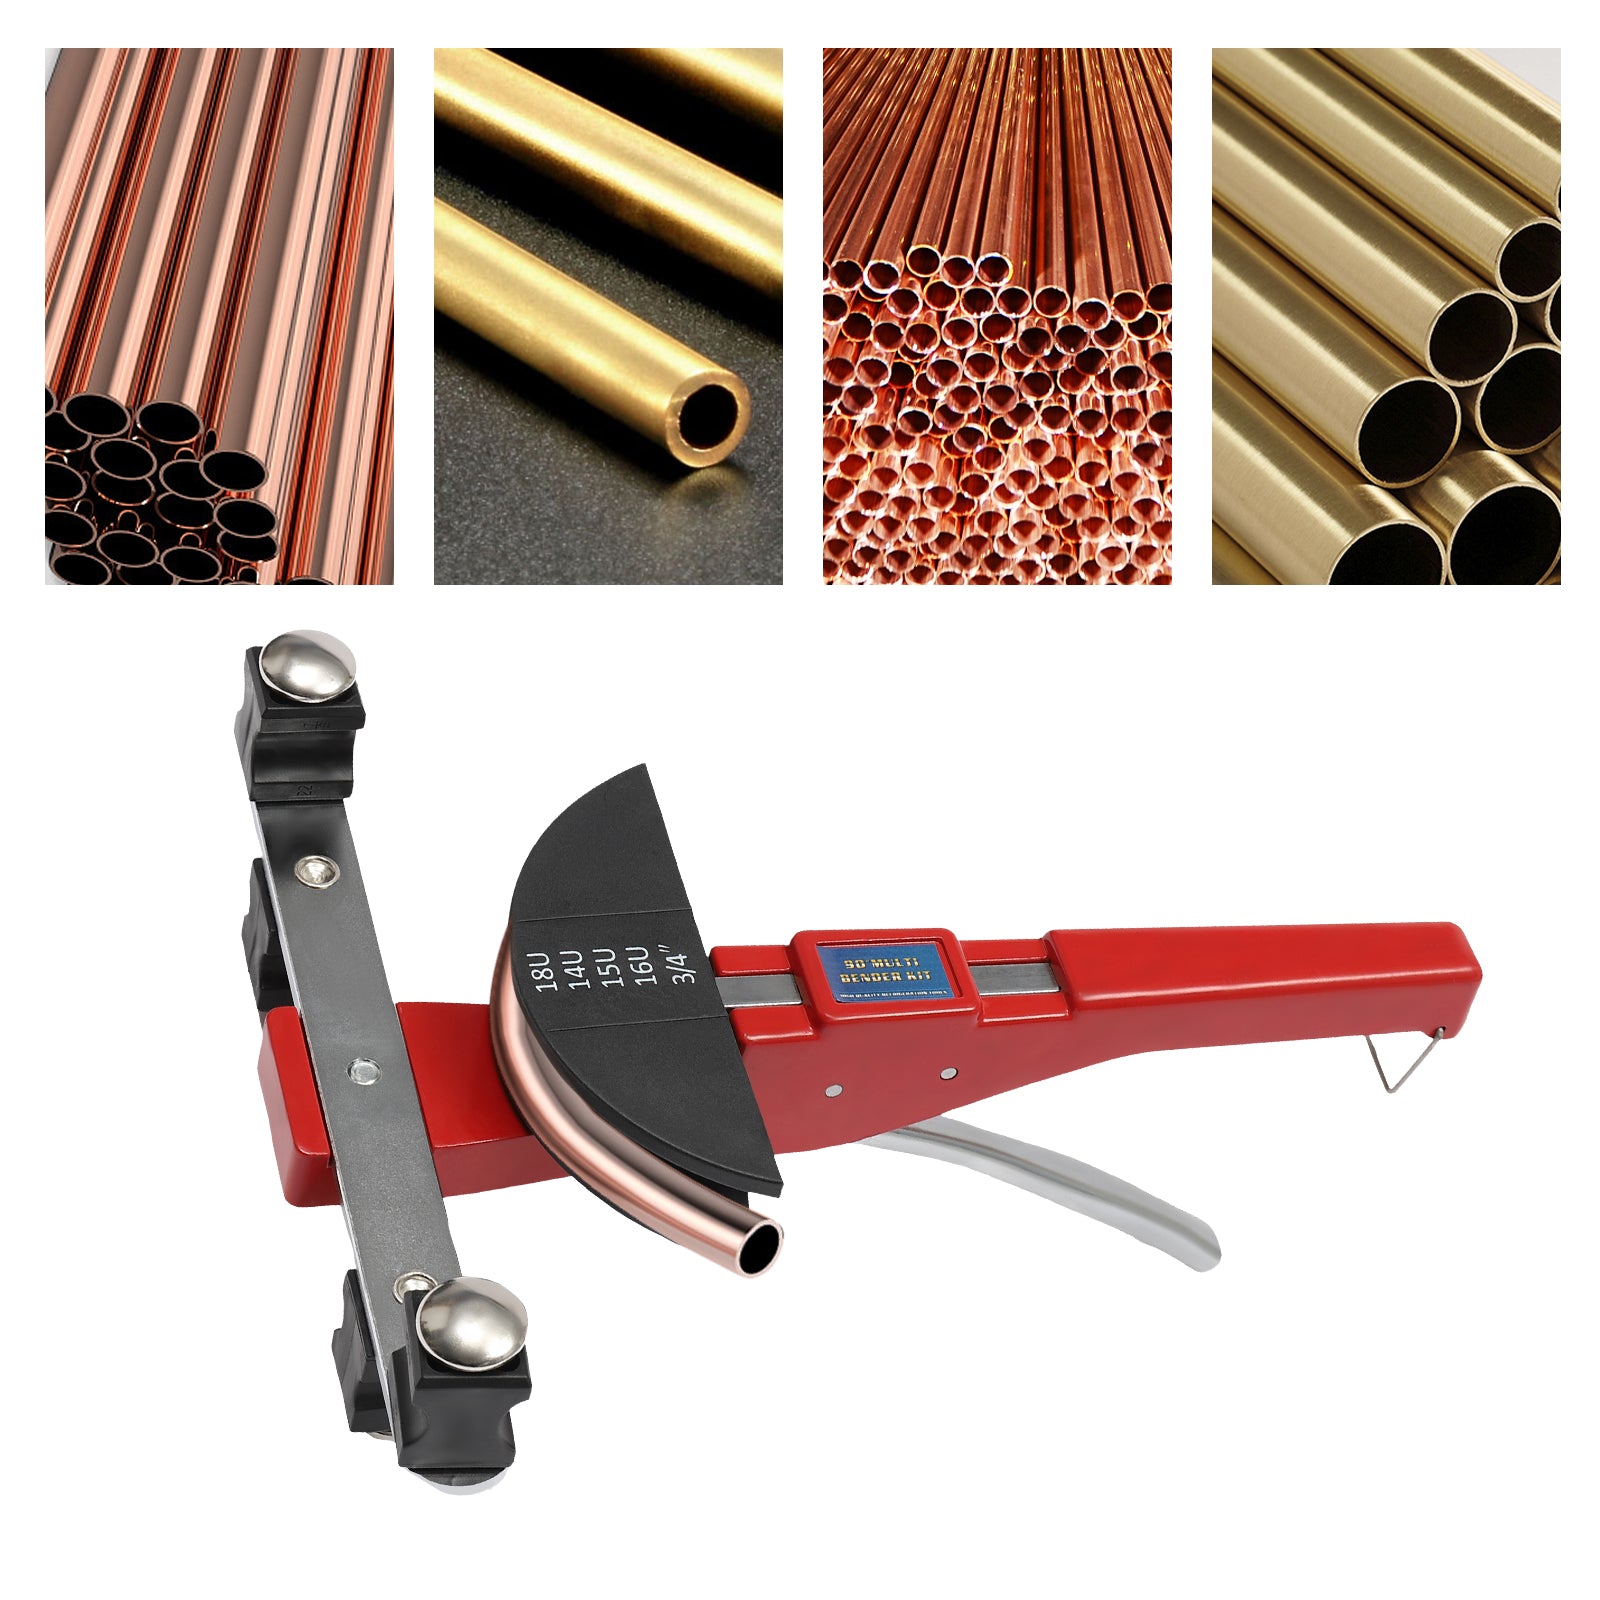 Curvatubi con una sola mano,6 – 22 mm,per tubi in rame, tubi in alluminio, tubi in acciaio inox a pareti sottili, tubi in riciclaggio,rosso